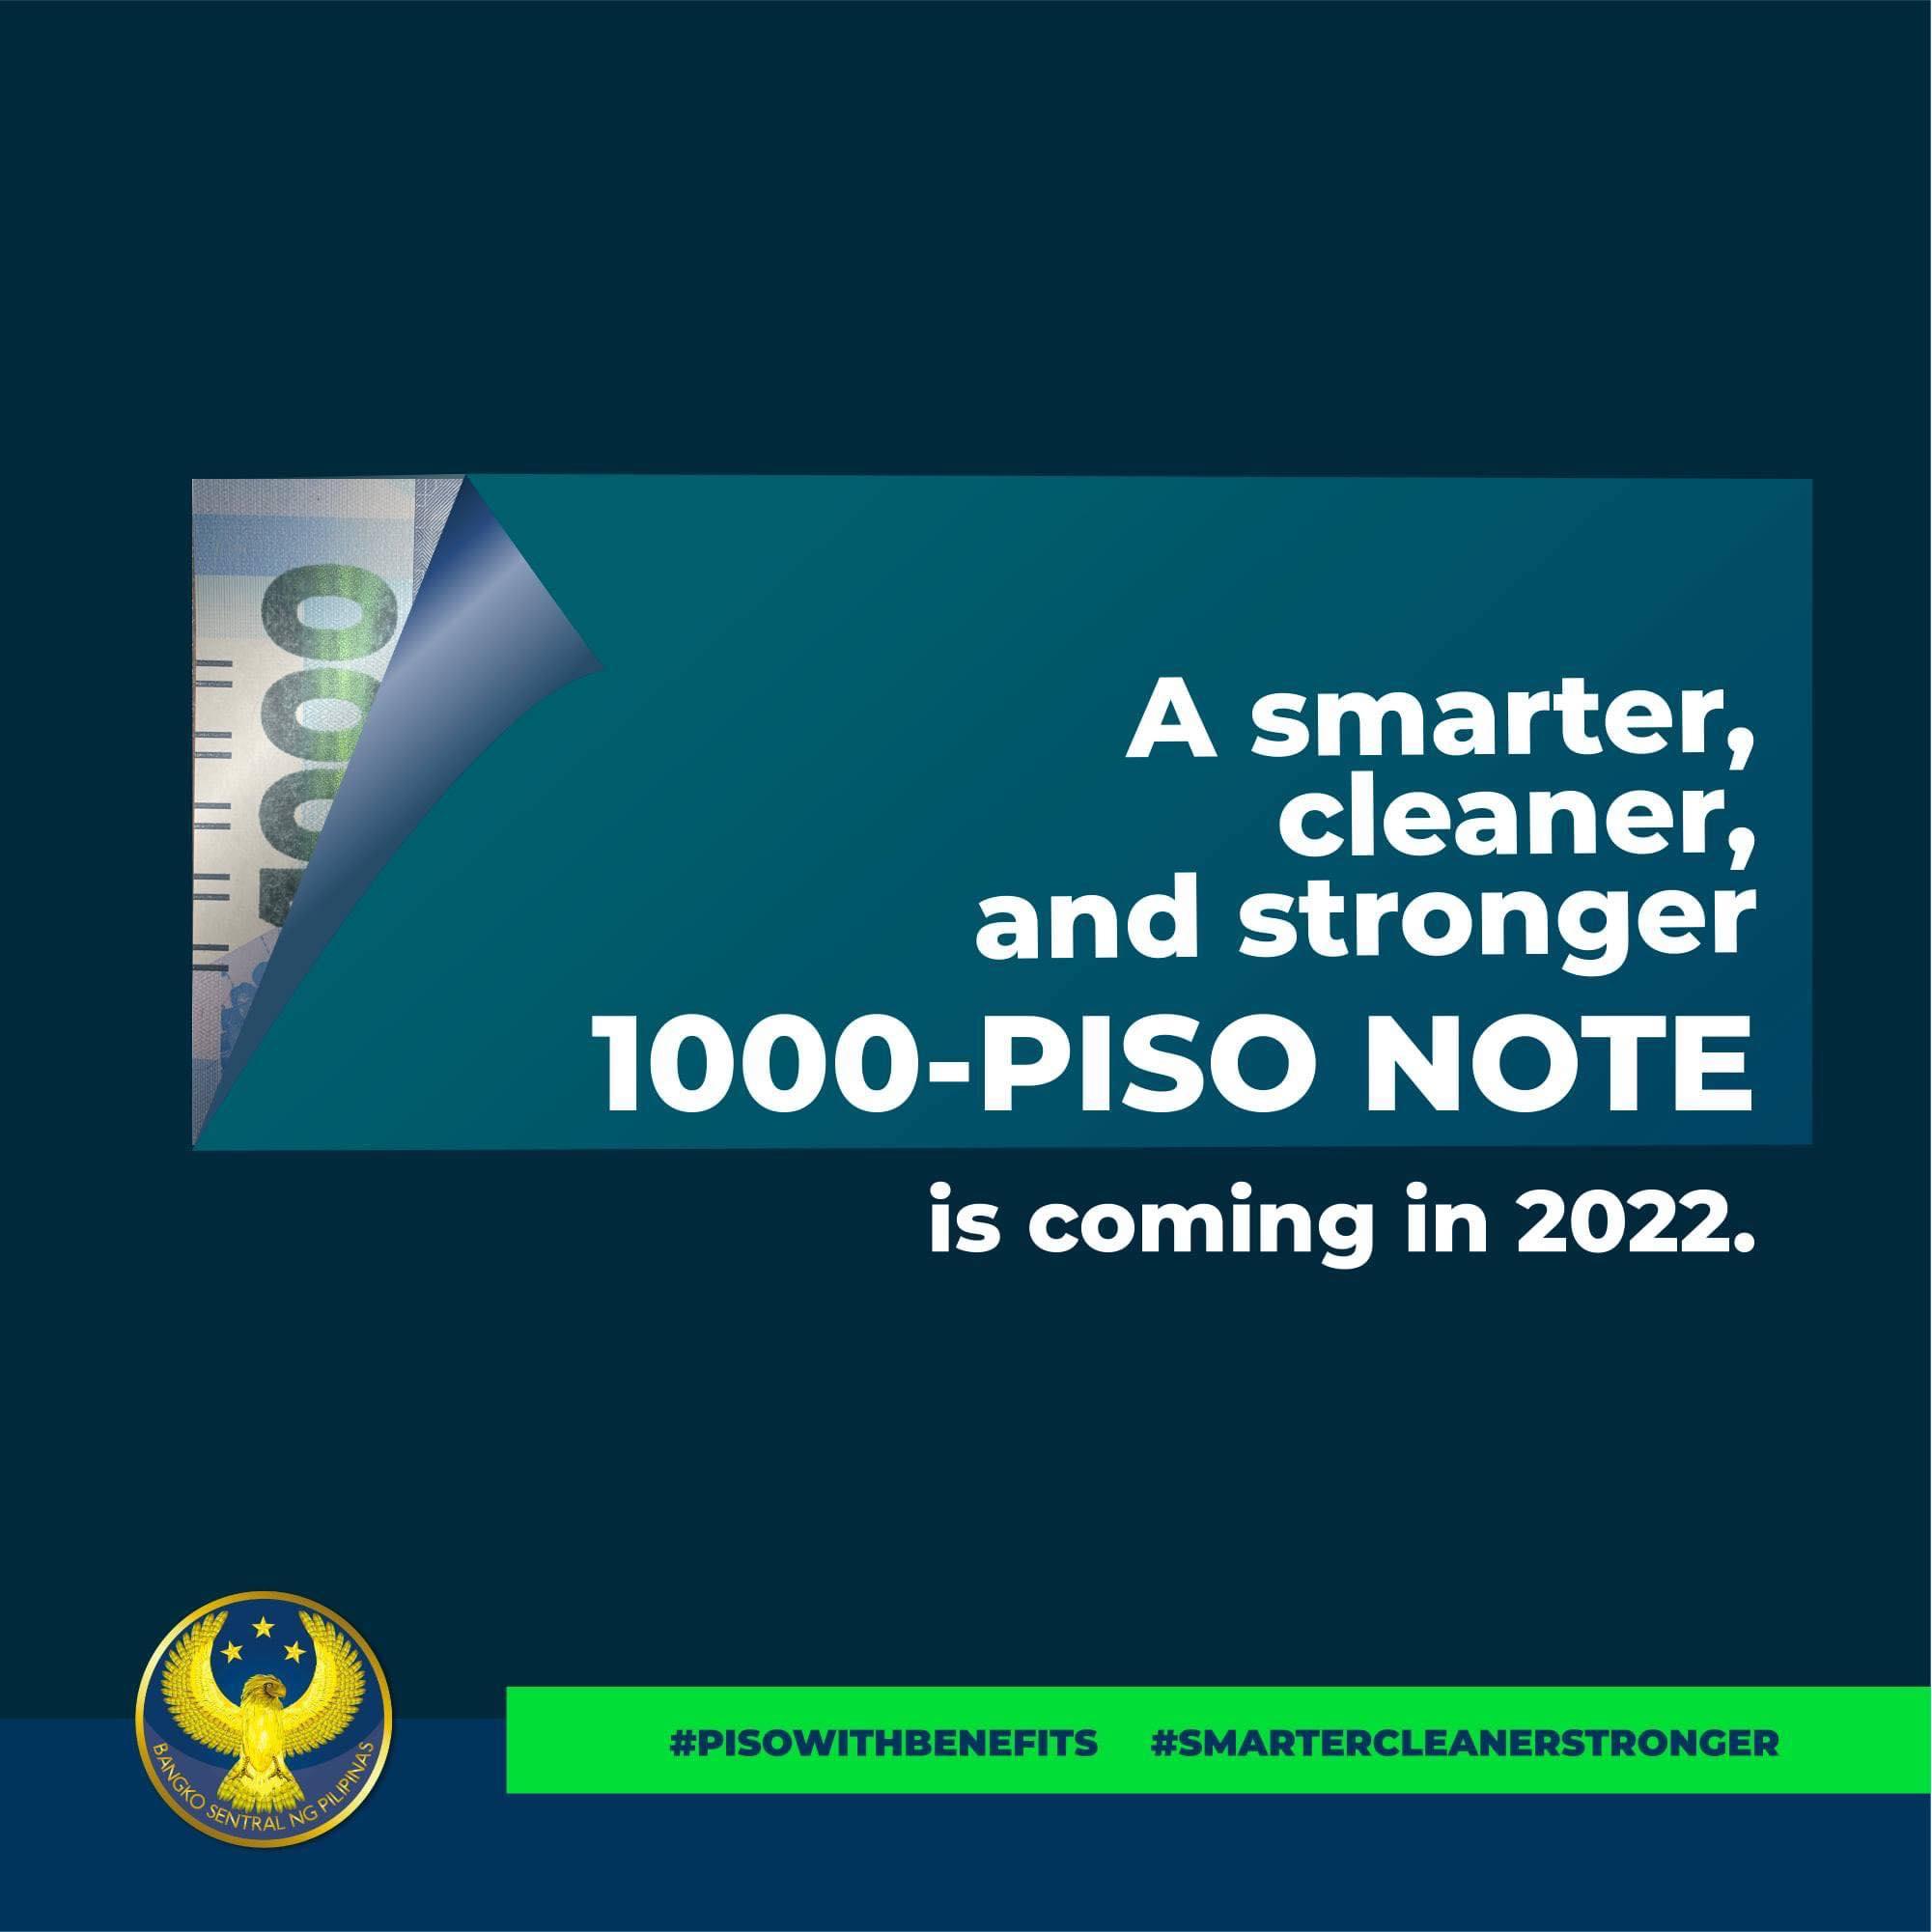 Batch pertama uang kertas polimer P1.000 akan tiba pada April 2022 Berita GMA Online